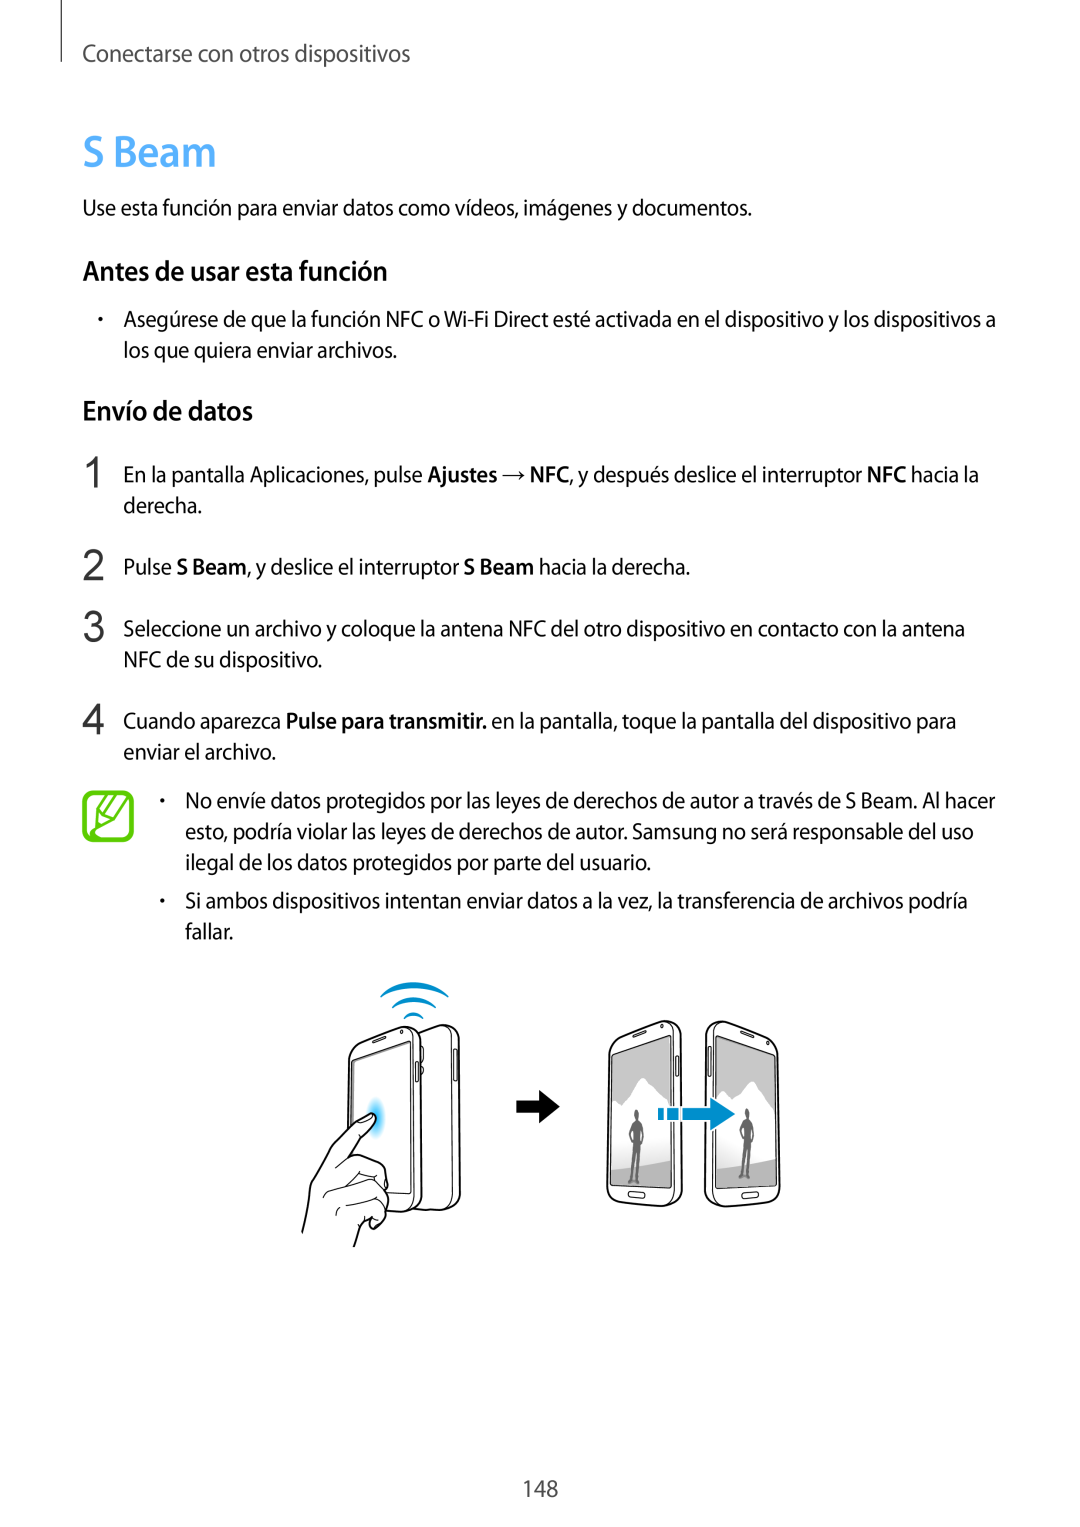 Samsung SM-G901FZKADBT manual S Beam, Envío de datos, Antes de usar esta función, Conectarse con otros dispositivos 